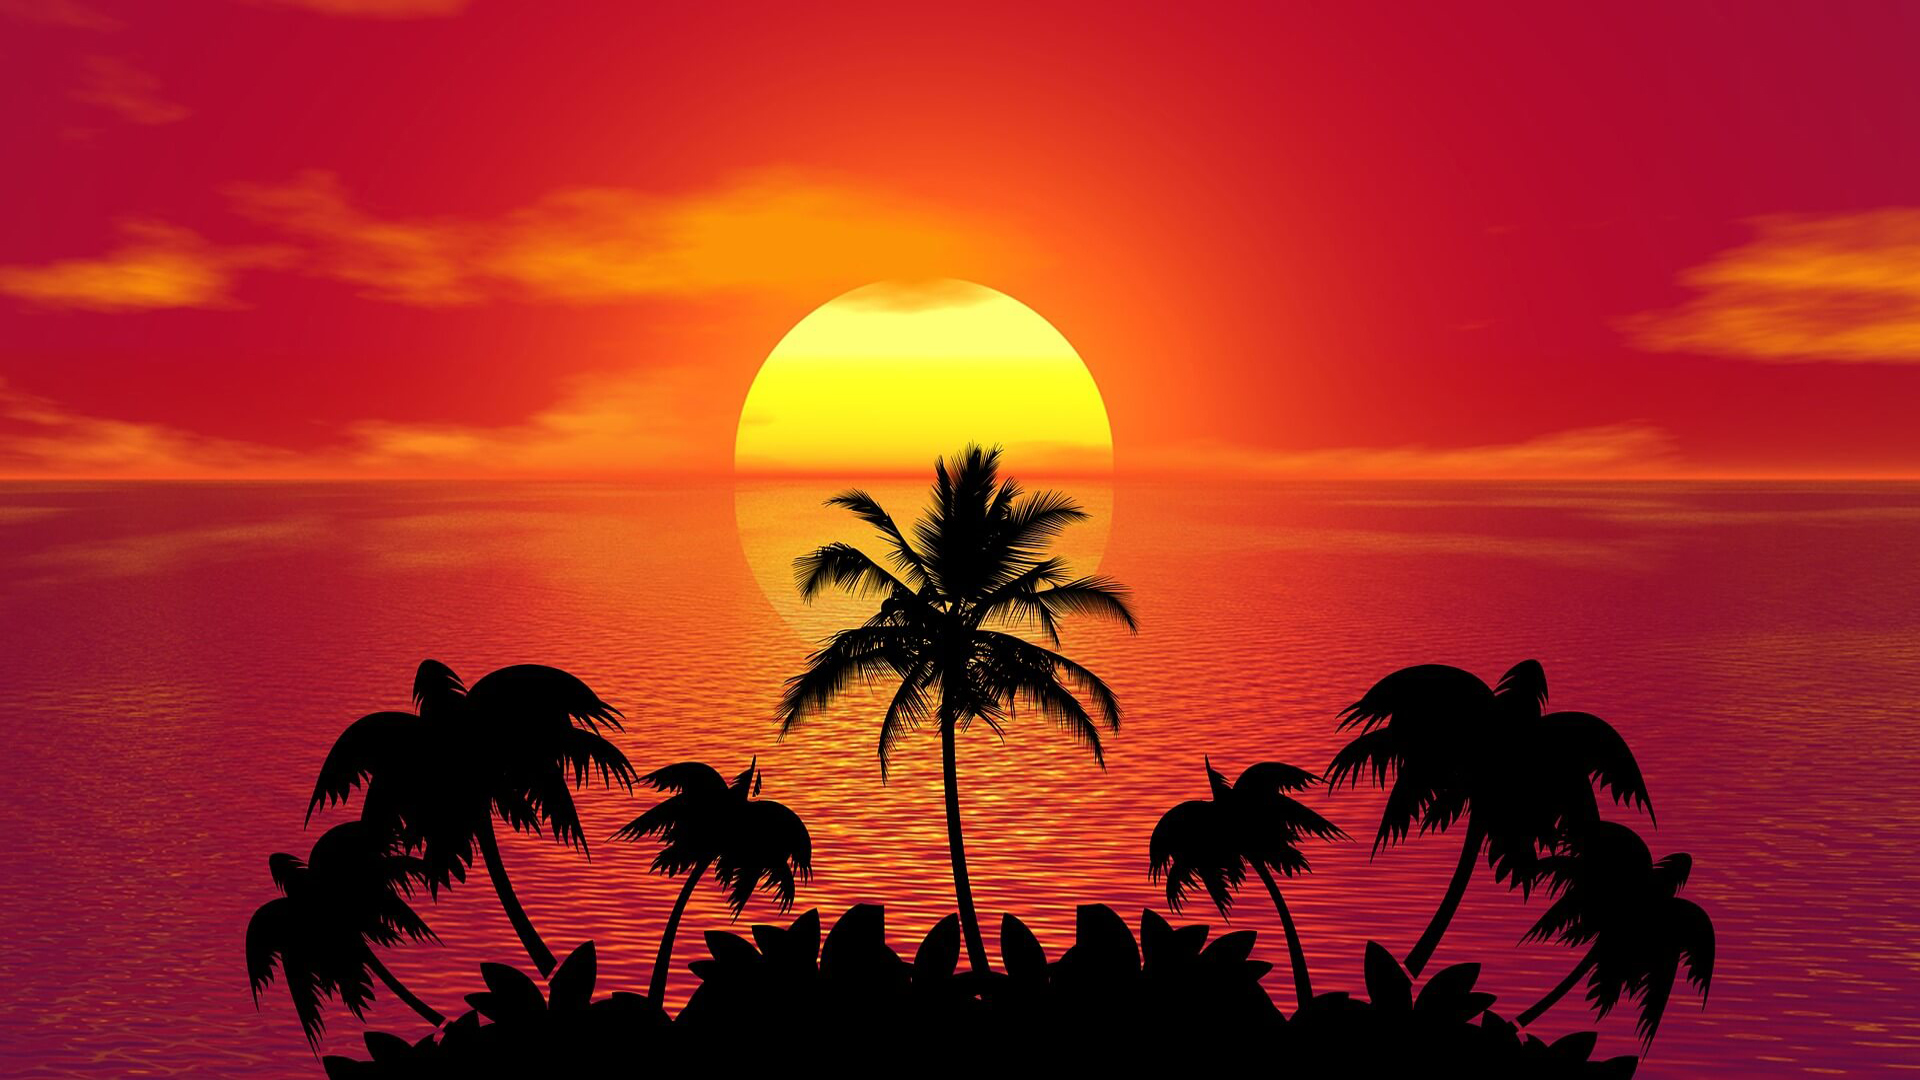 Tropical Island Summer Red Sunset Beach Ocean Palm Wallpapers Hd ...